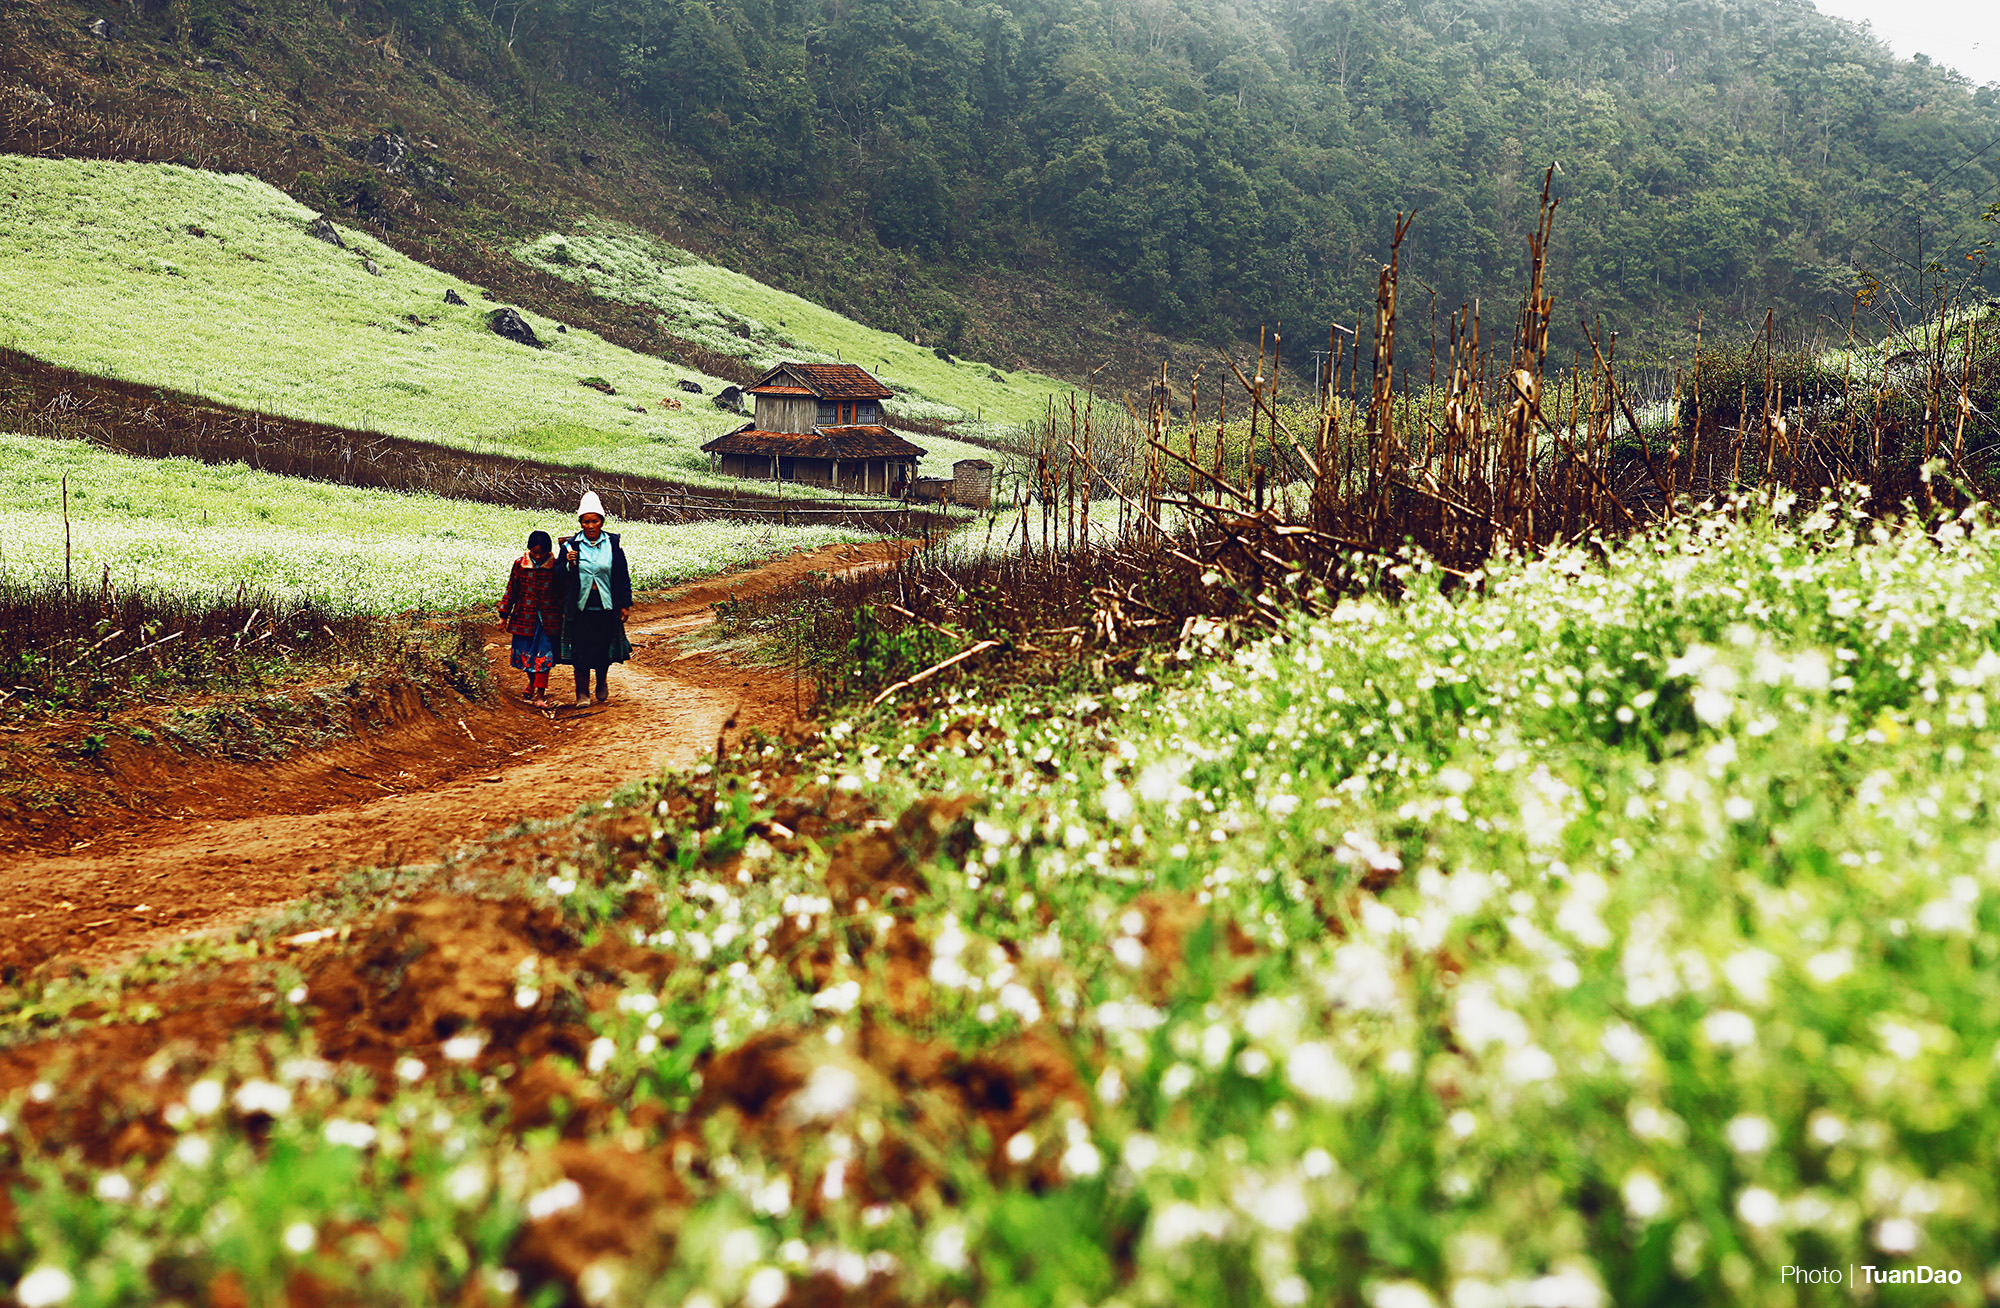 Hai mẹ con người dân tộc thiểu số đang đi qua cánh đồng hoa cải để trở về nhà (Ảnh: Tuấn Đào)